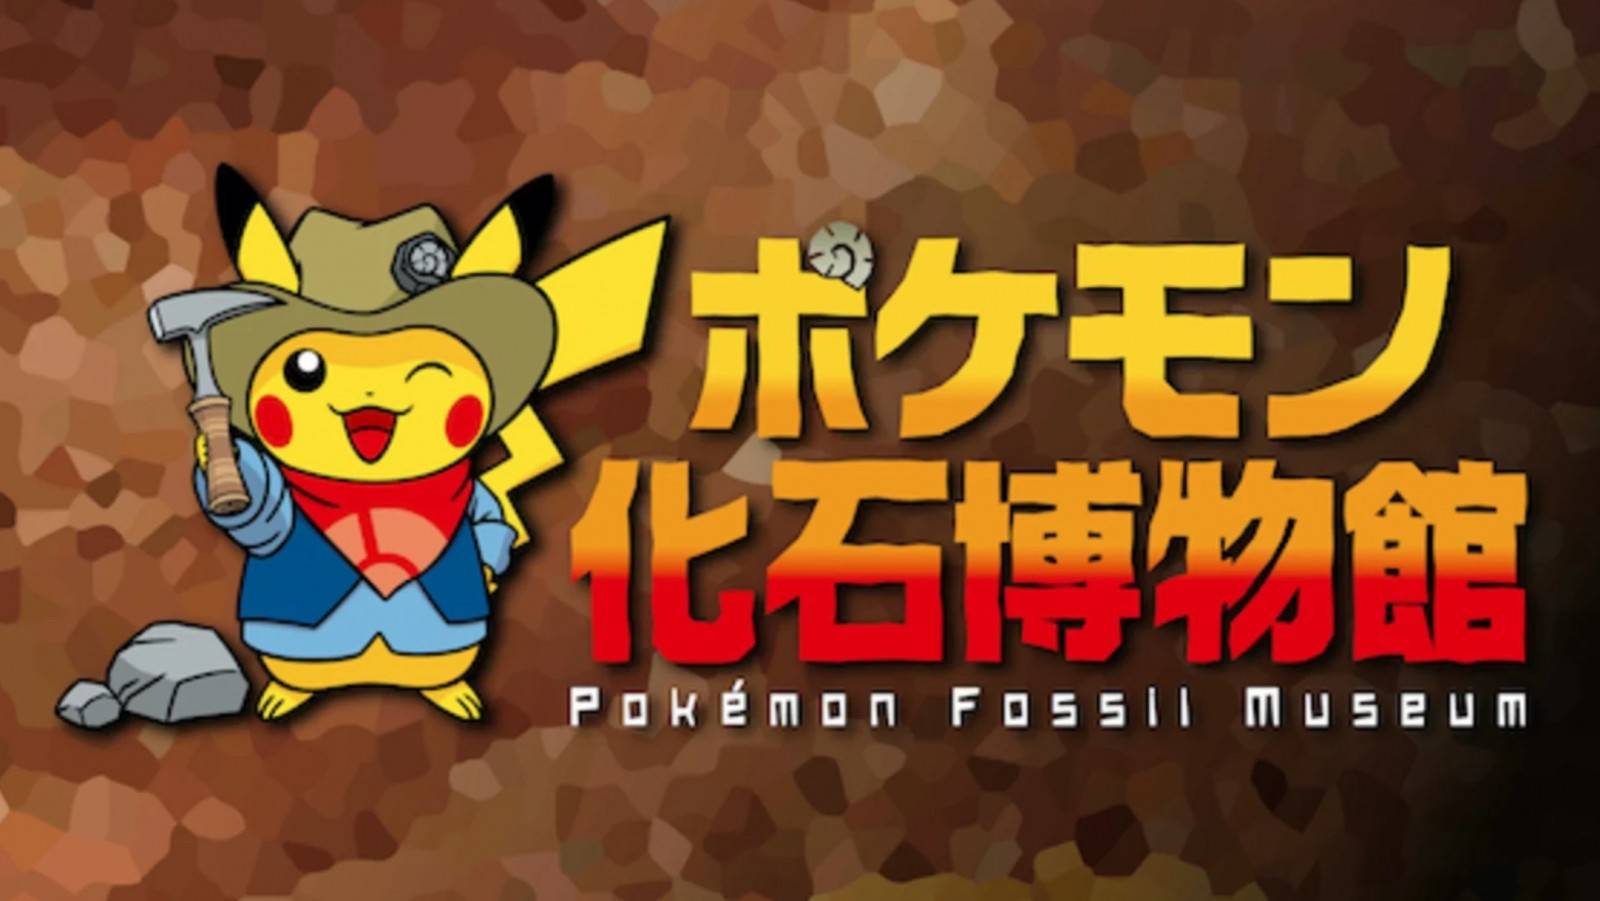 Pokémon: Japón Inaugura una exhibición temática de Fósiles 2